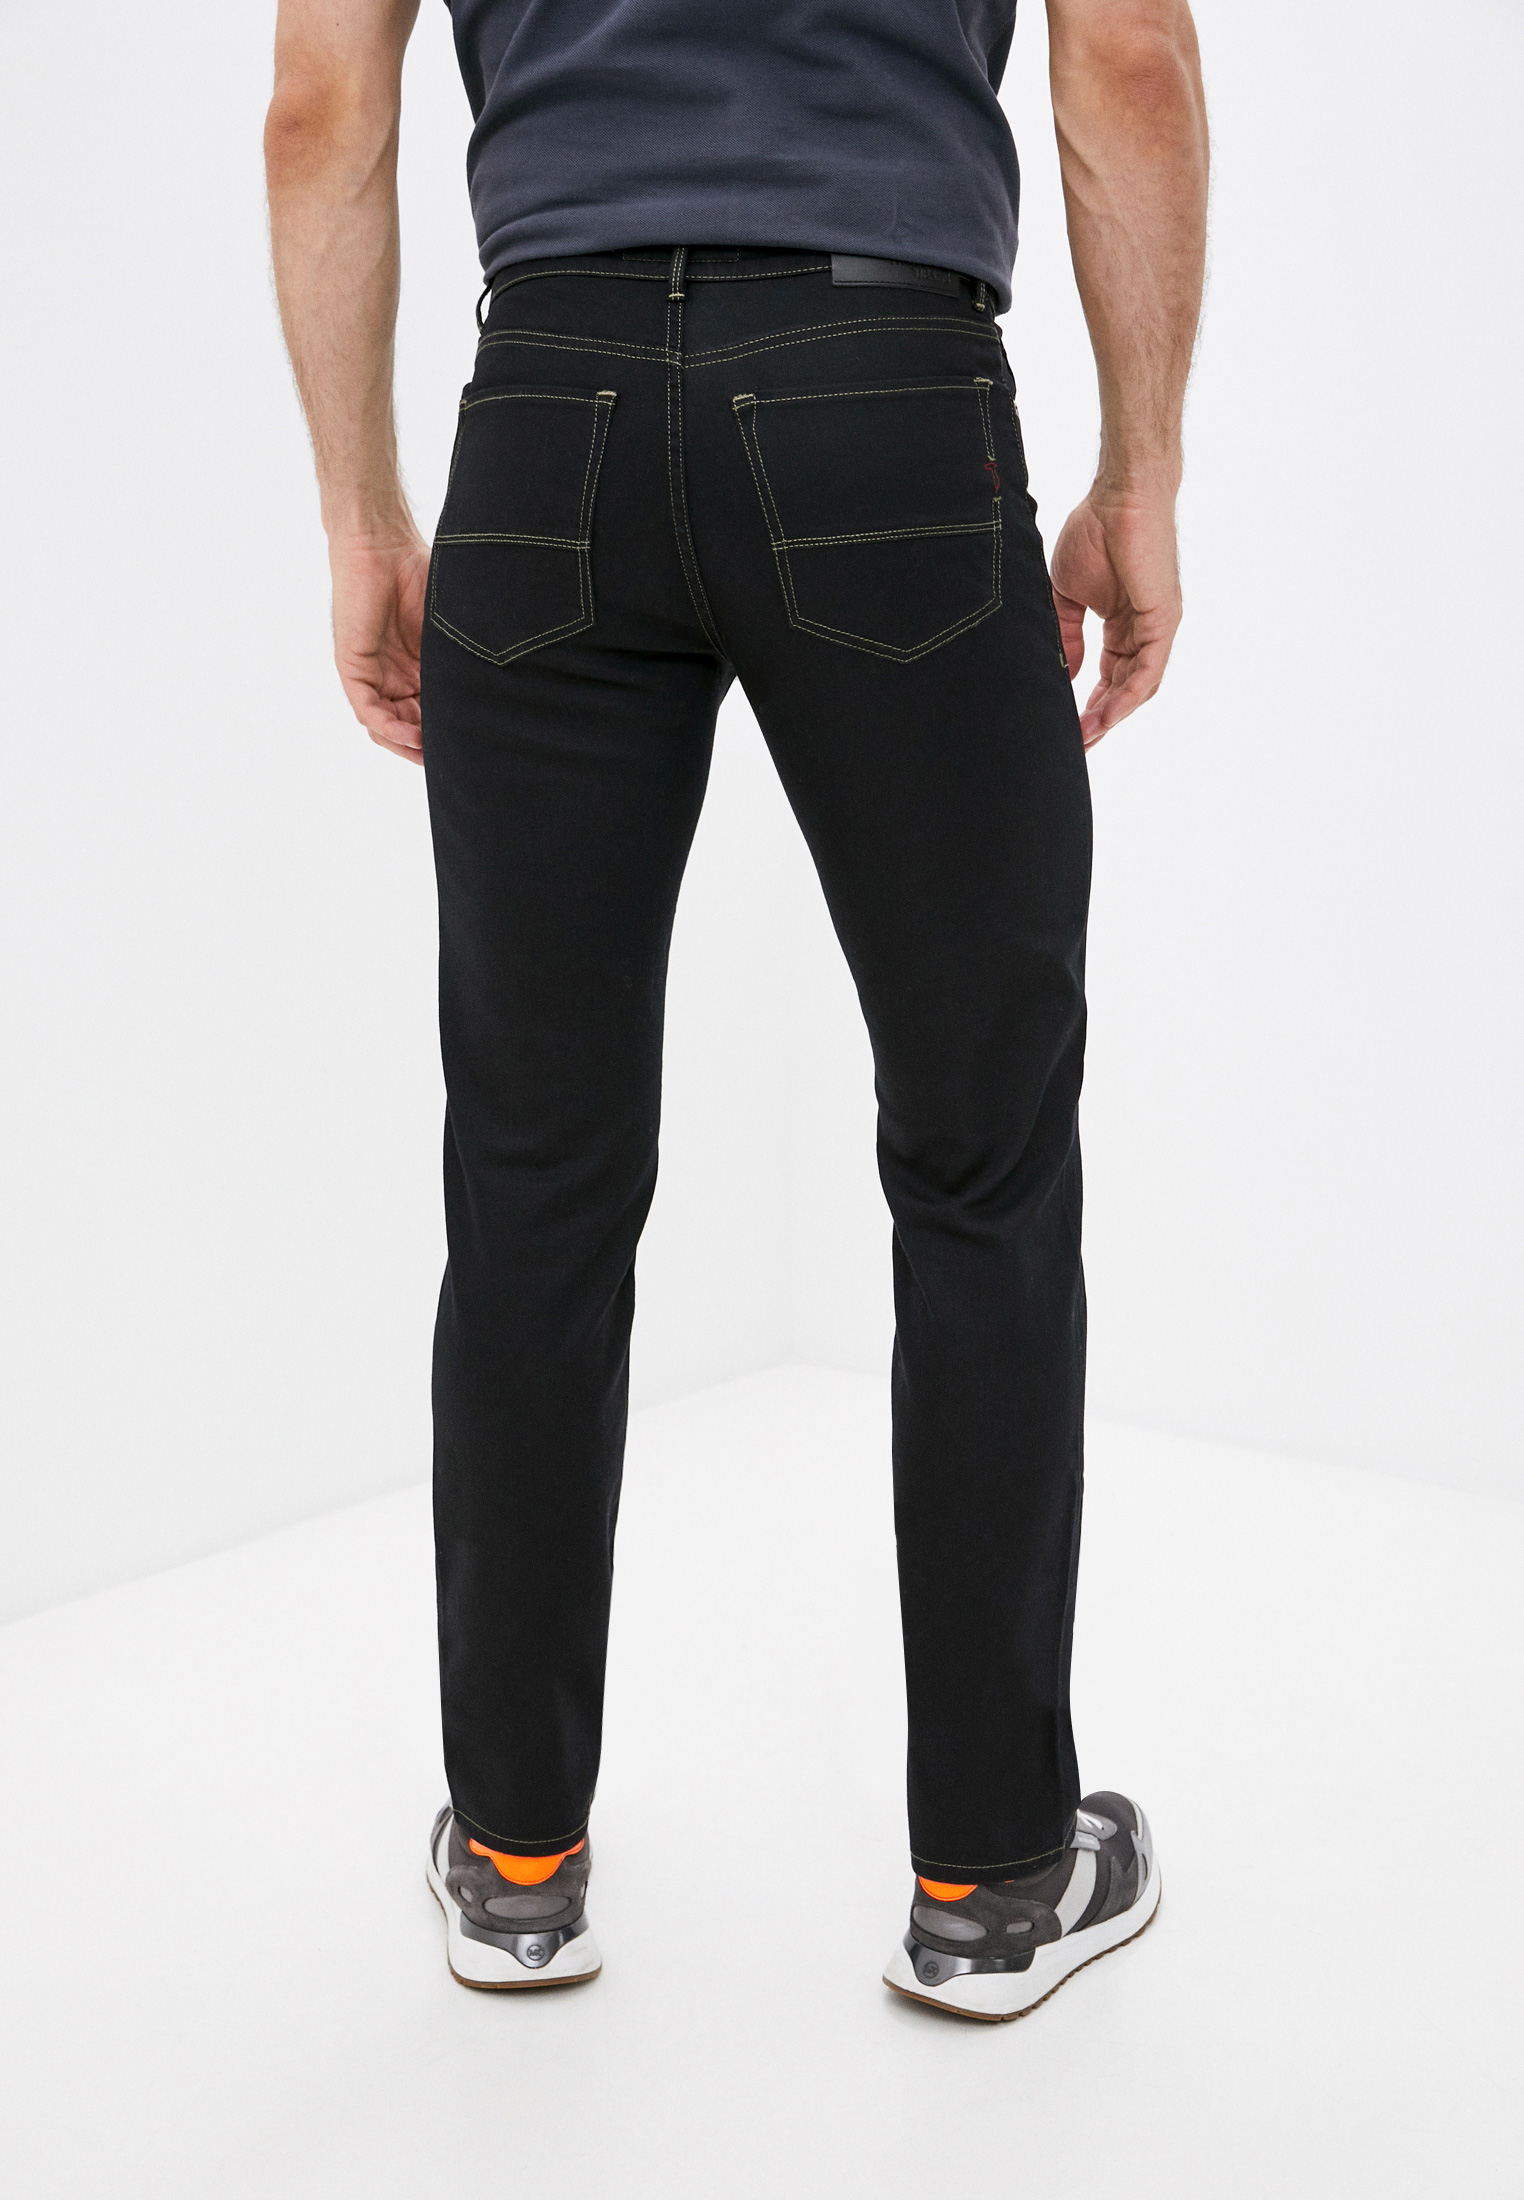 Мужские прямые джинсы Trussardi (Труссарди) 52J00001-1T001491-B-003: изображение 5